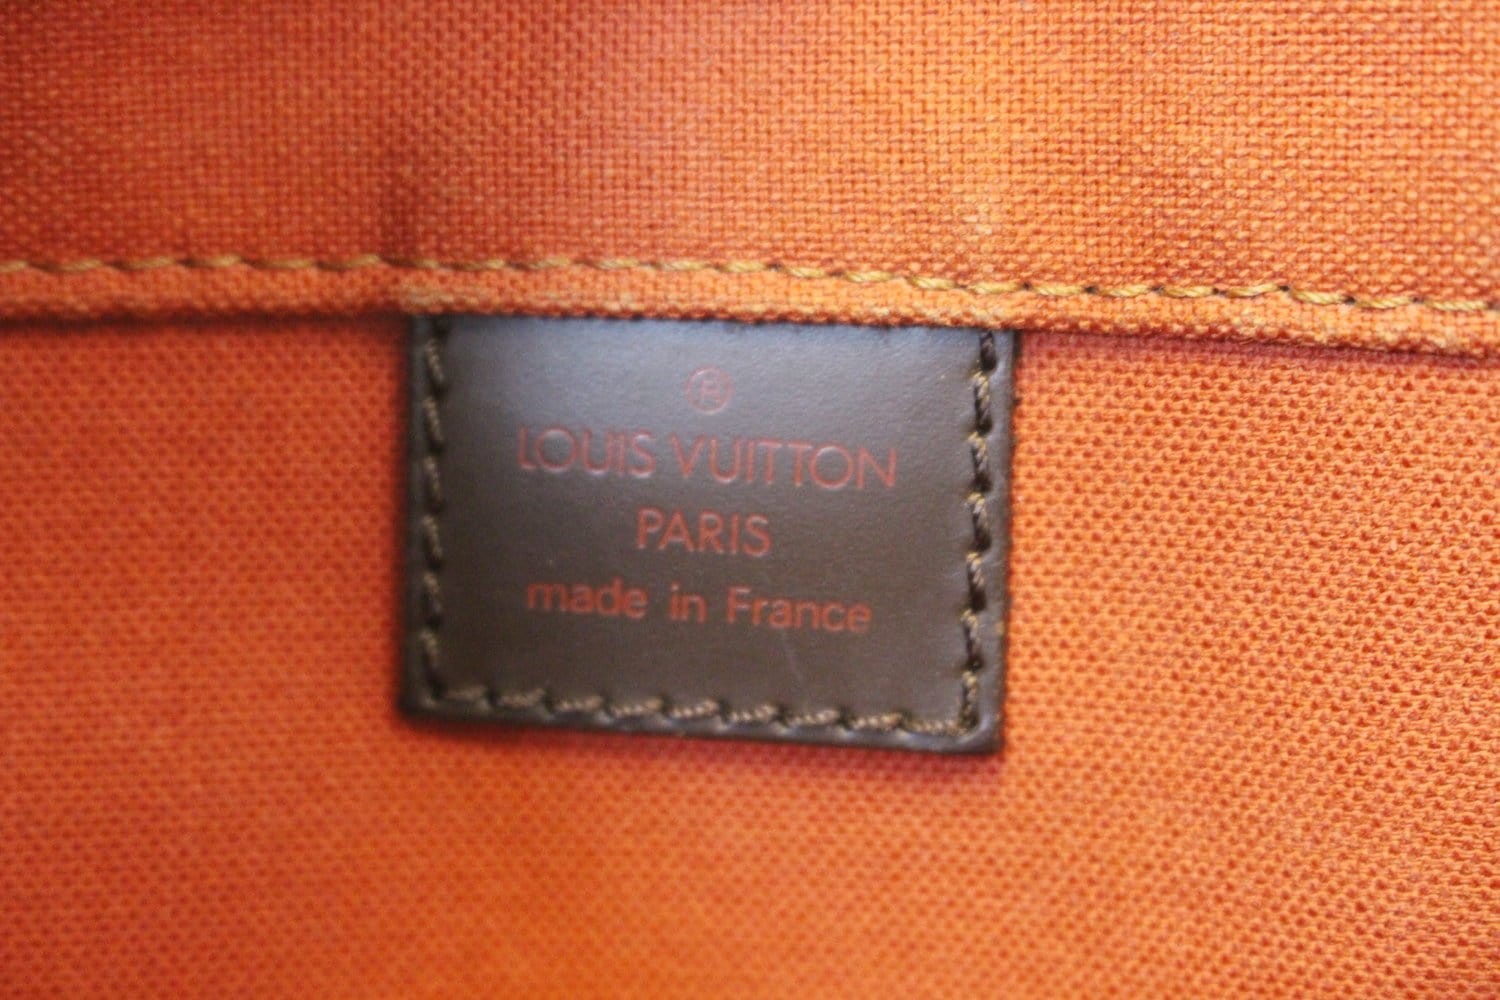 Louis Vuitton Damier Ebene Bastille Messenger Bag ○ Labellov